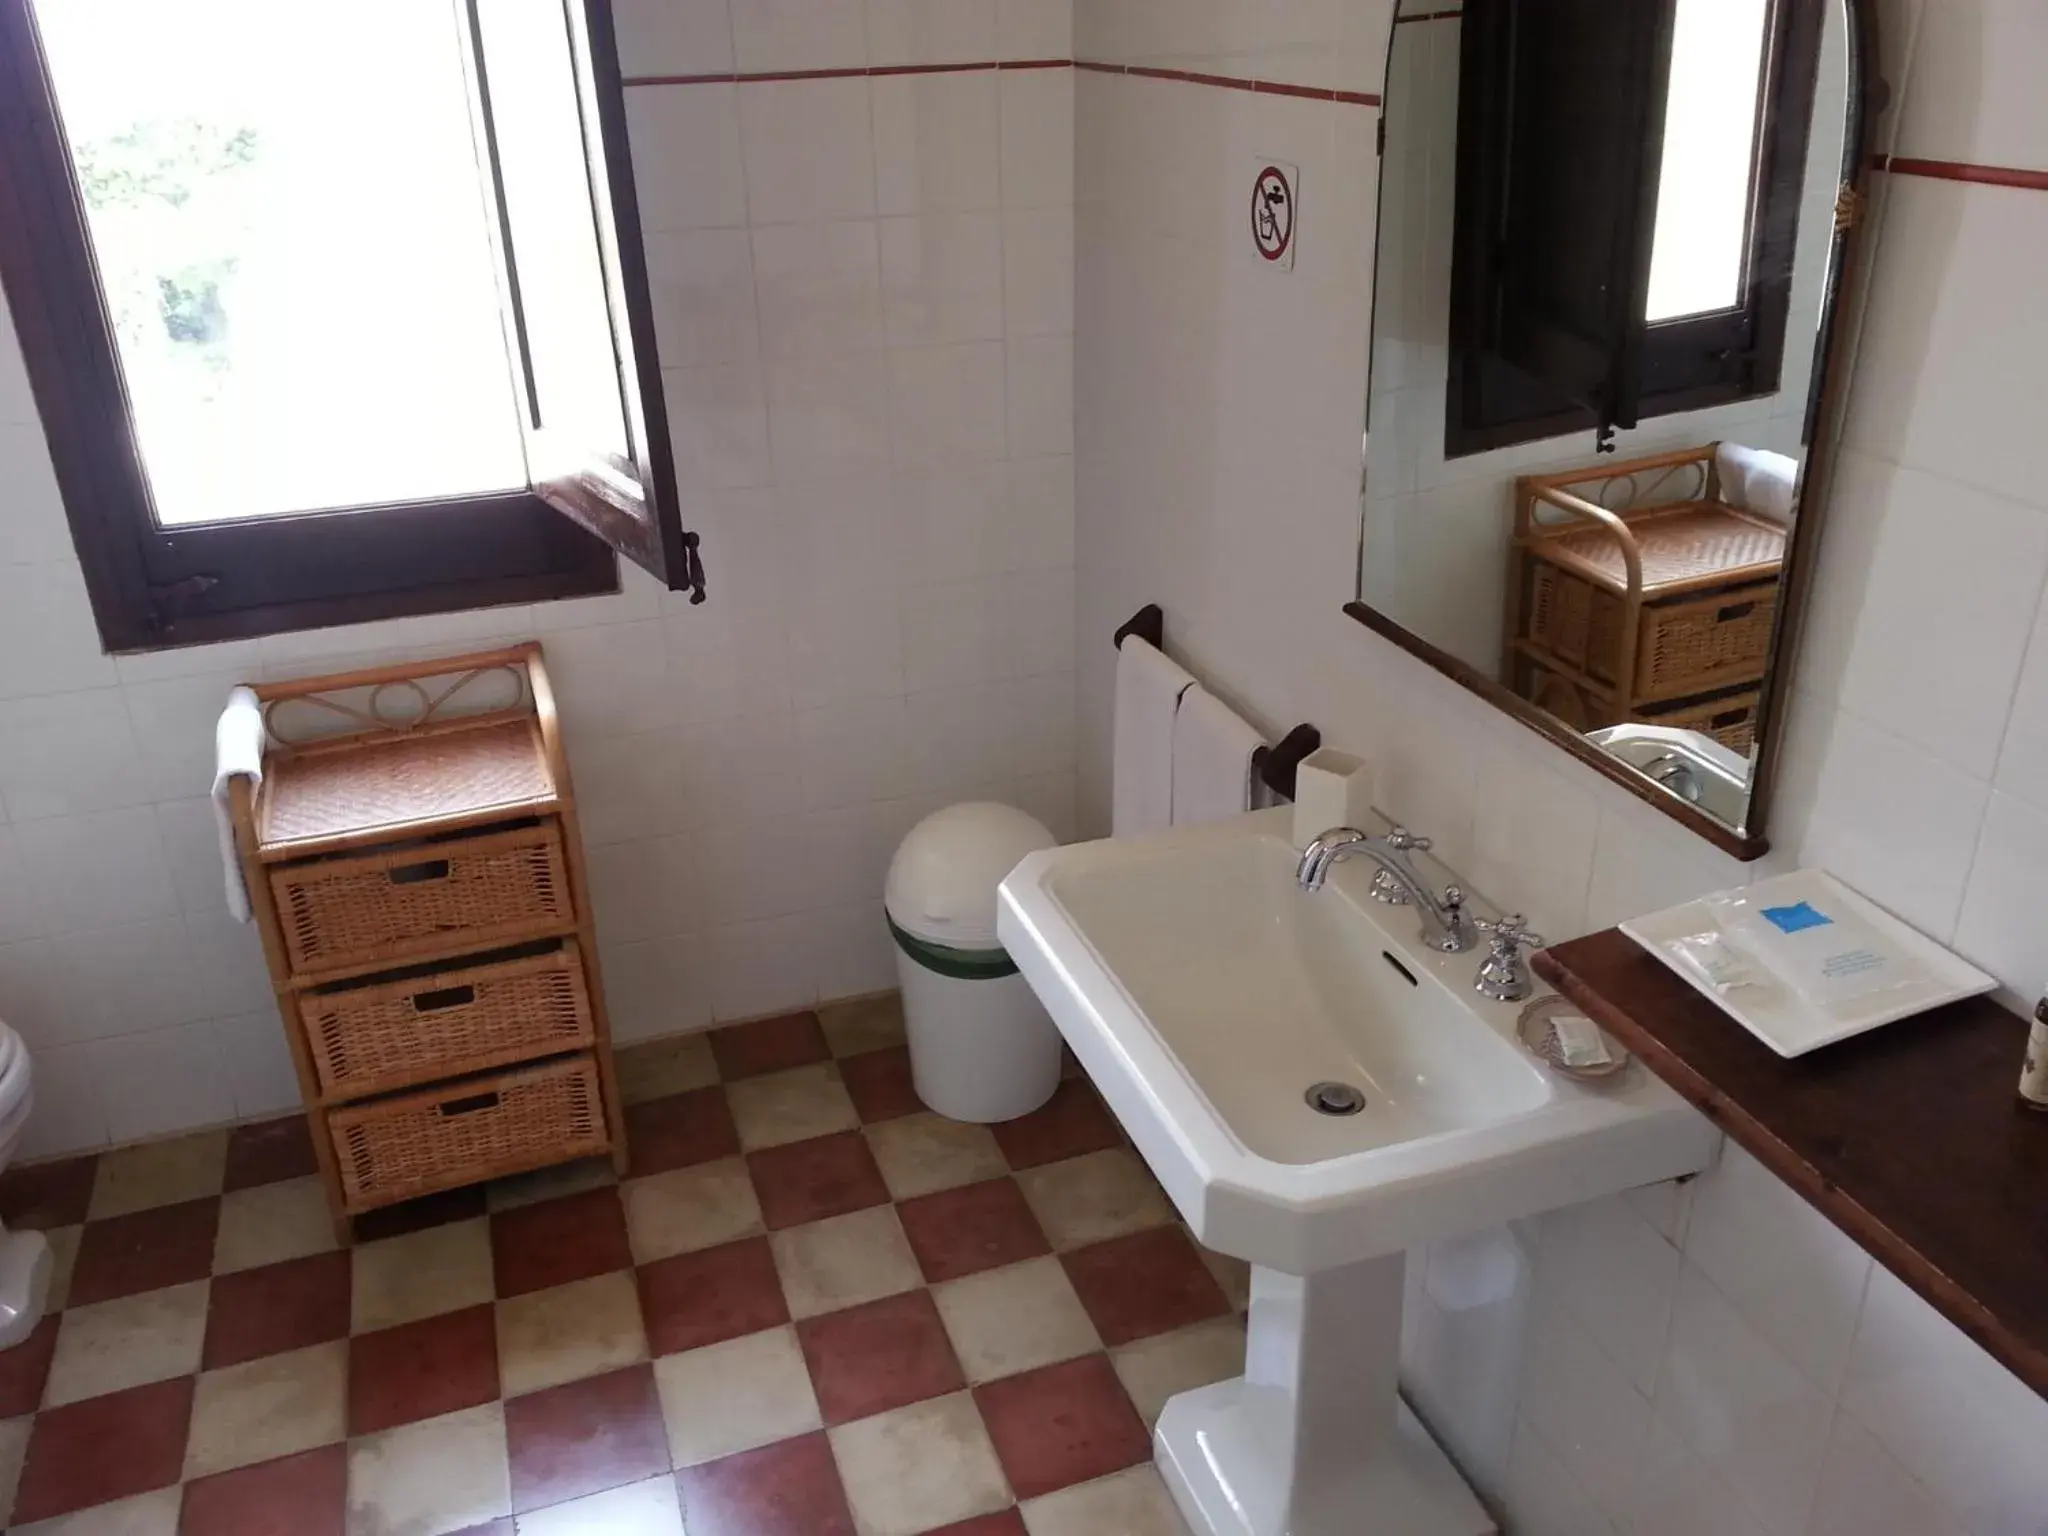 Bathroom in Baglio Spanò - Antiche Dimore di Sicilia